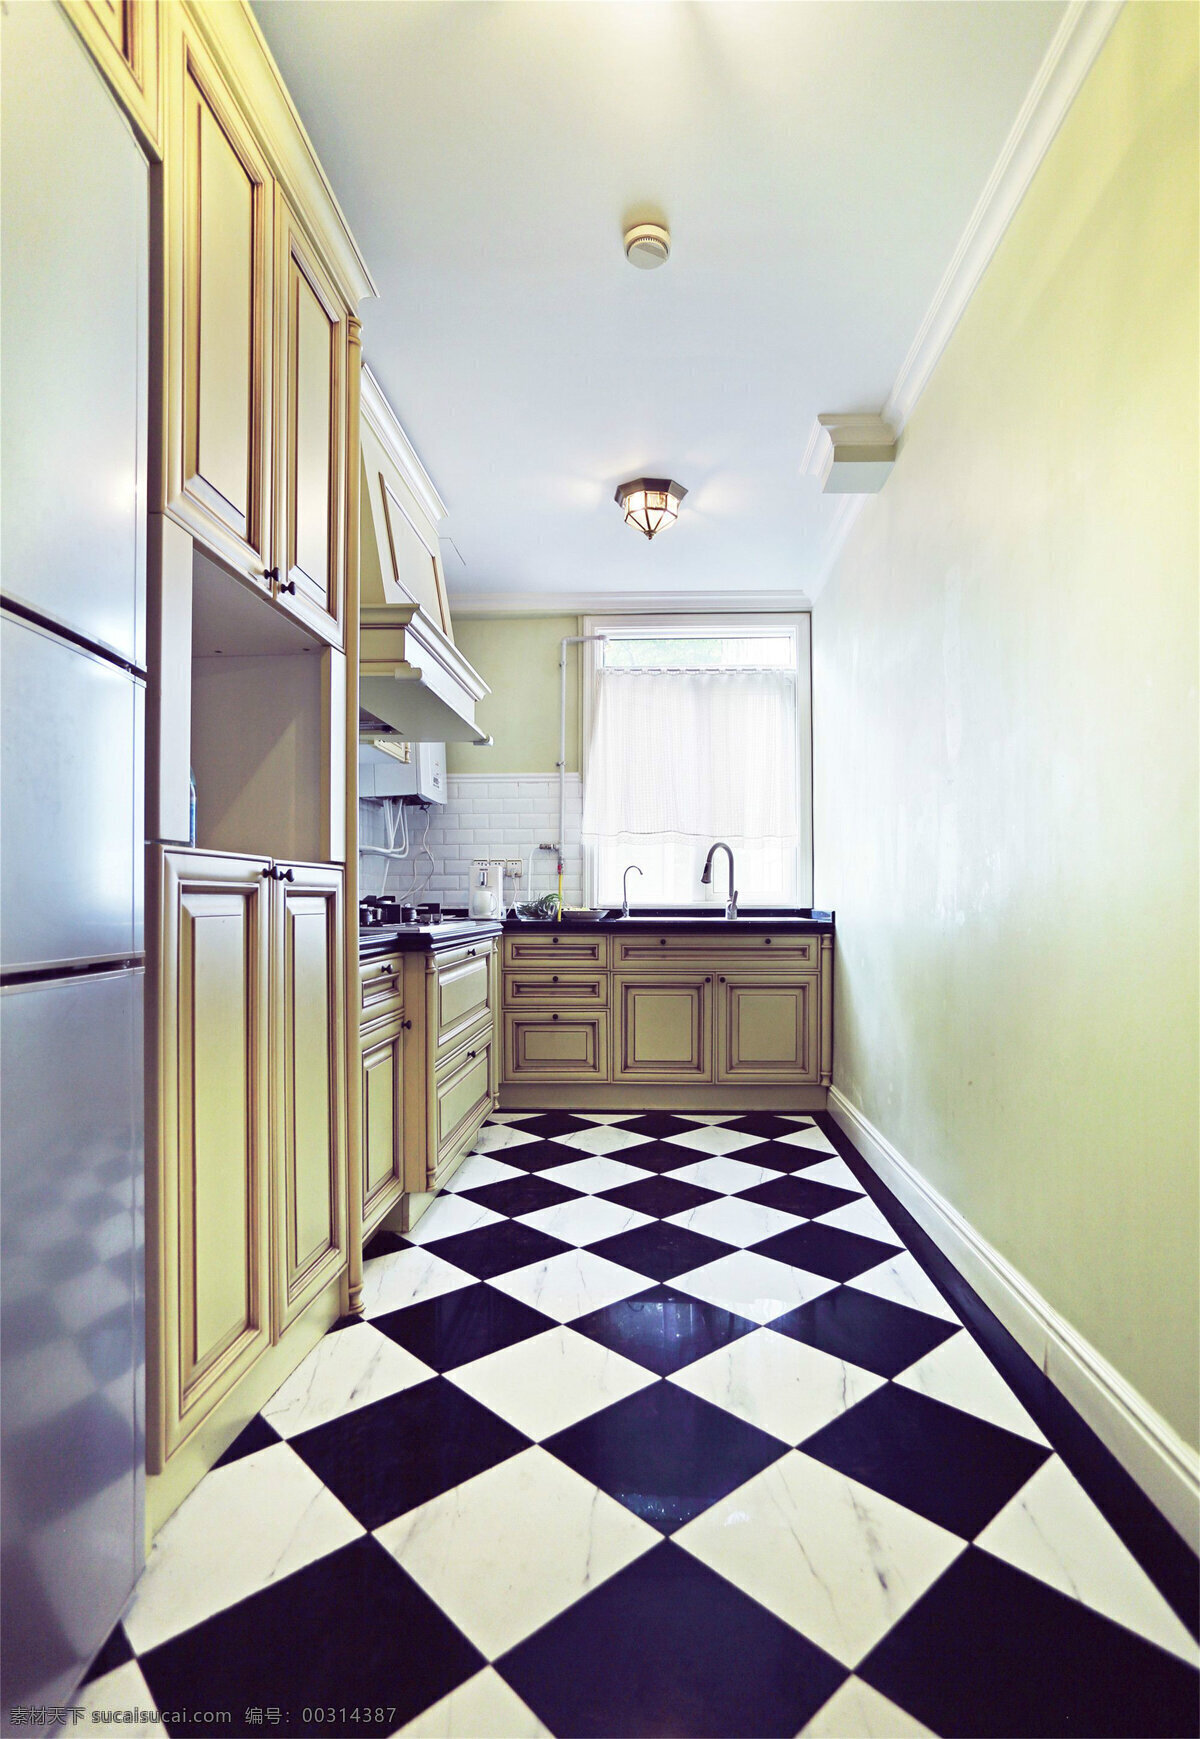 简约 家居 厨房 装修 效果图 家具 家具设计 空间设计 室内设计 室内装修 装修设计 风格 环境设计 洗手台 冰箱